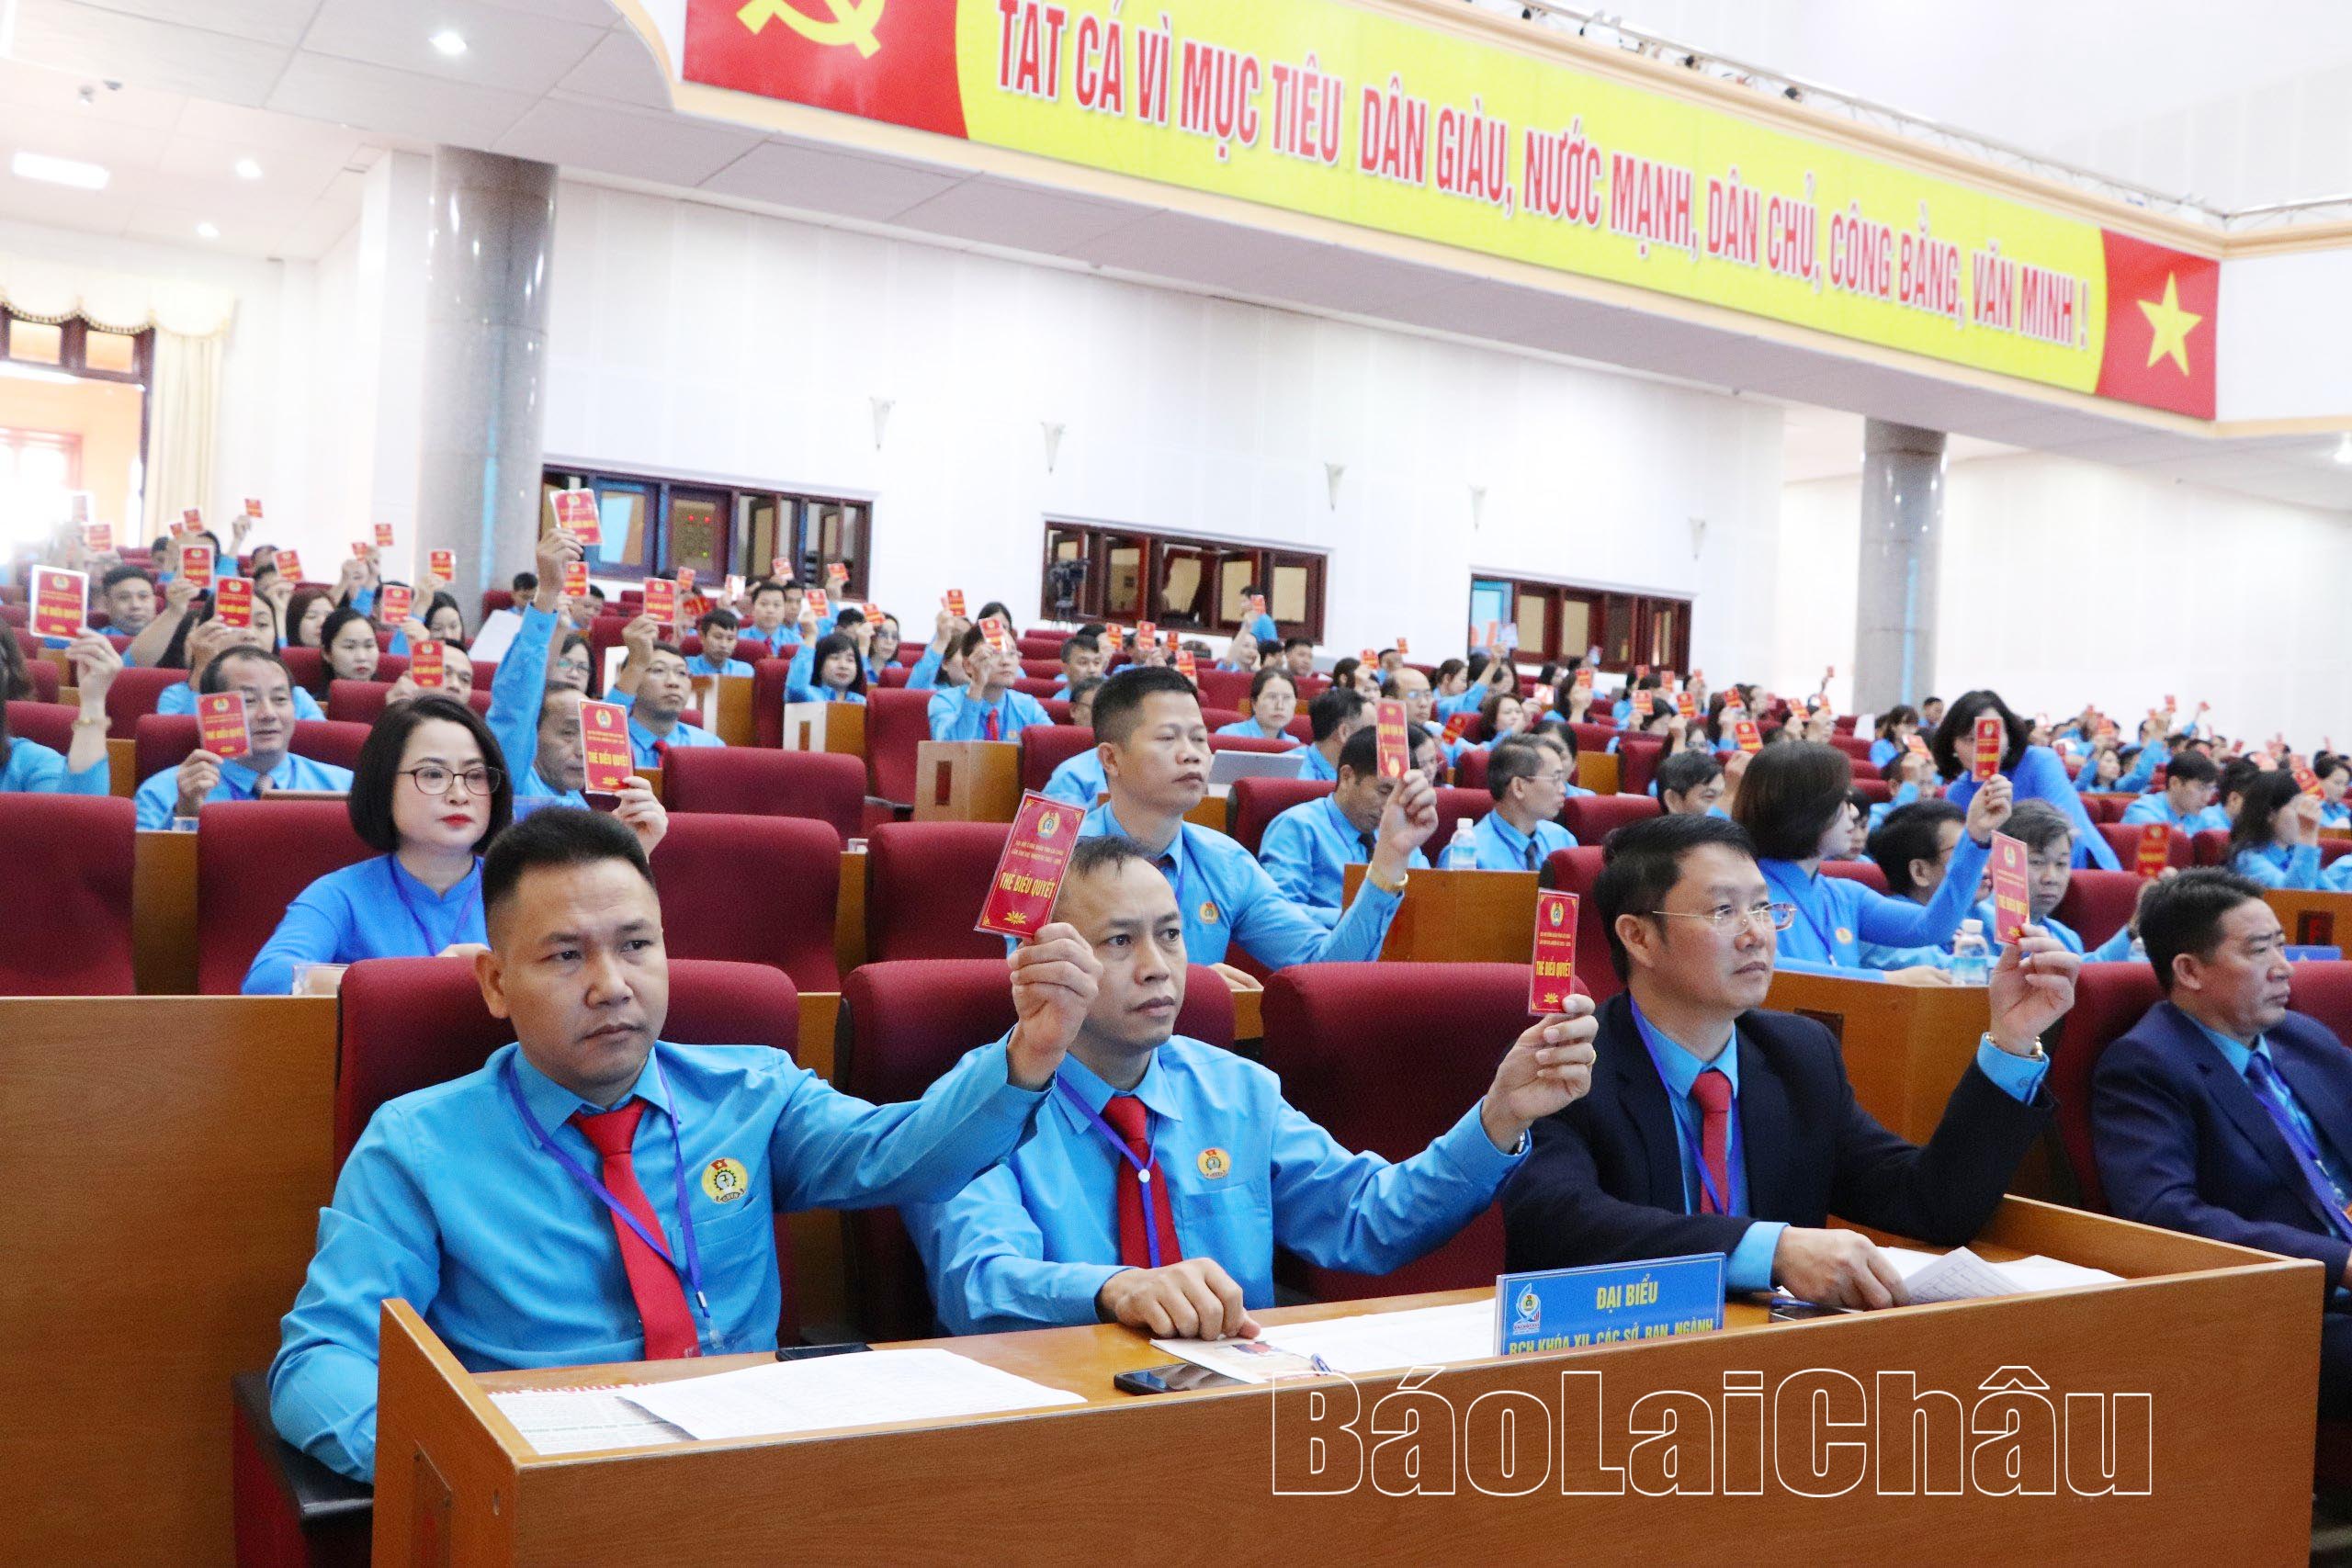 Đại biểu biểu quyết thông qua các nội dung tại Đại hội (ảnh: Báo Lai Châu)